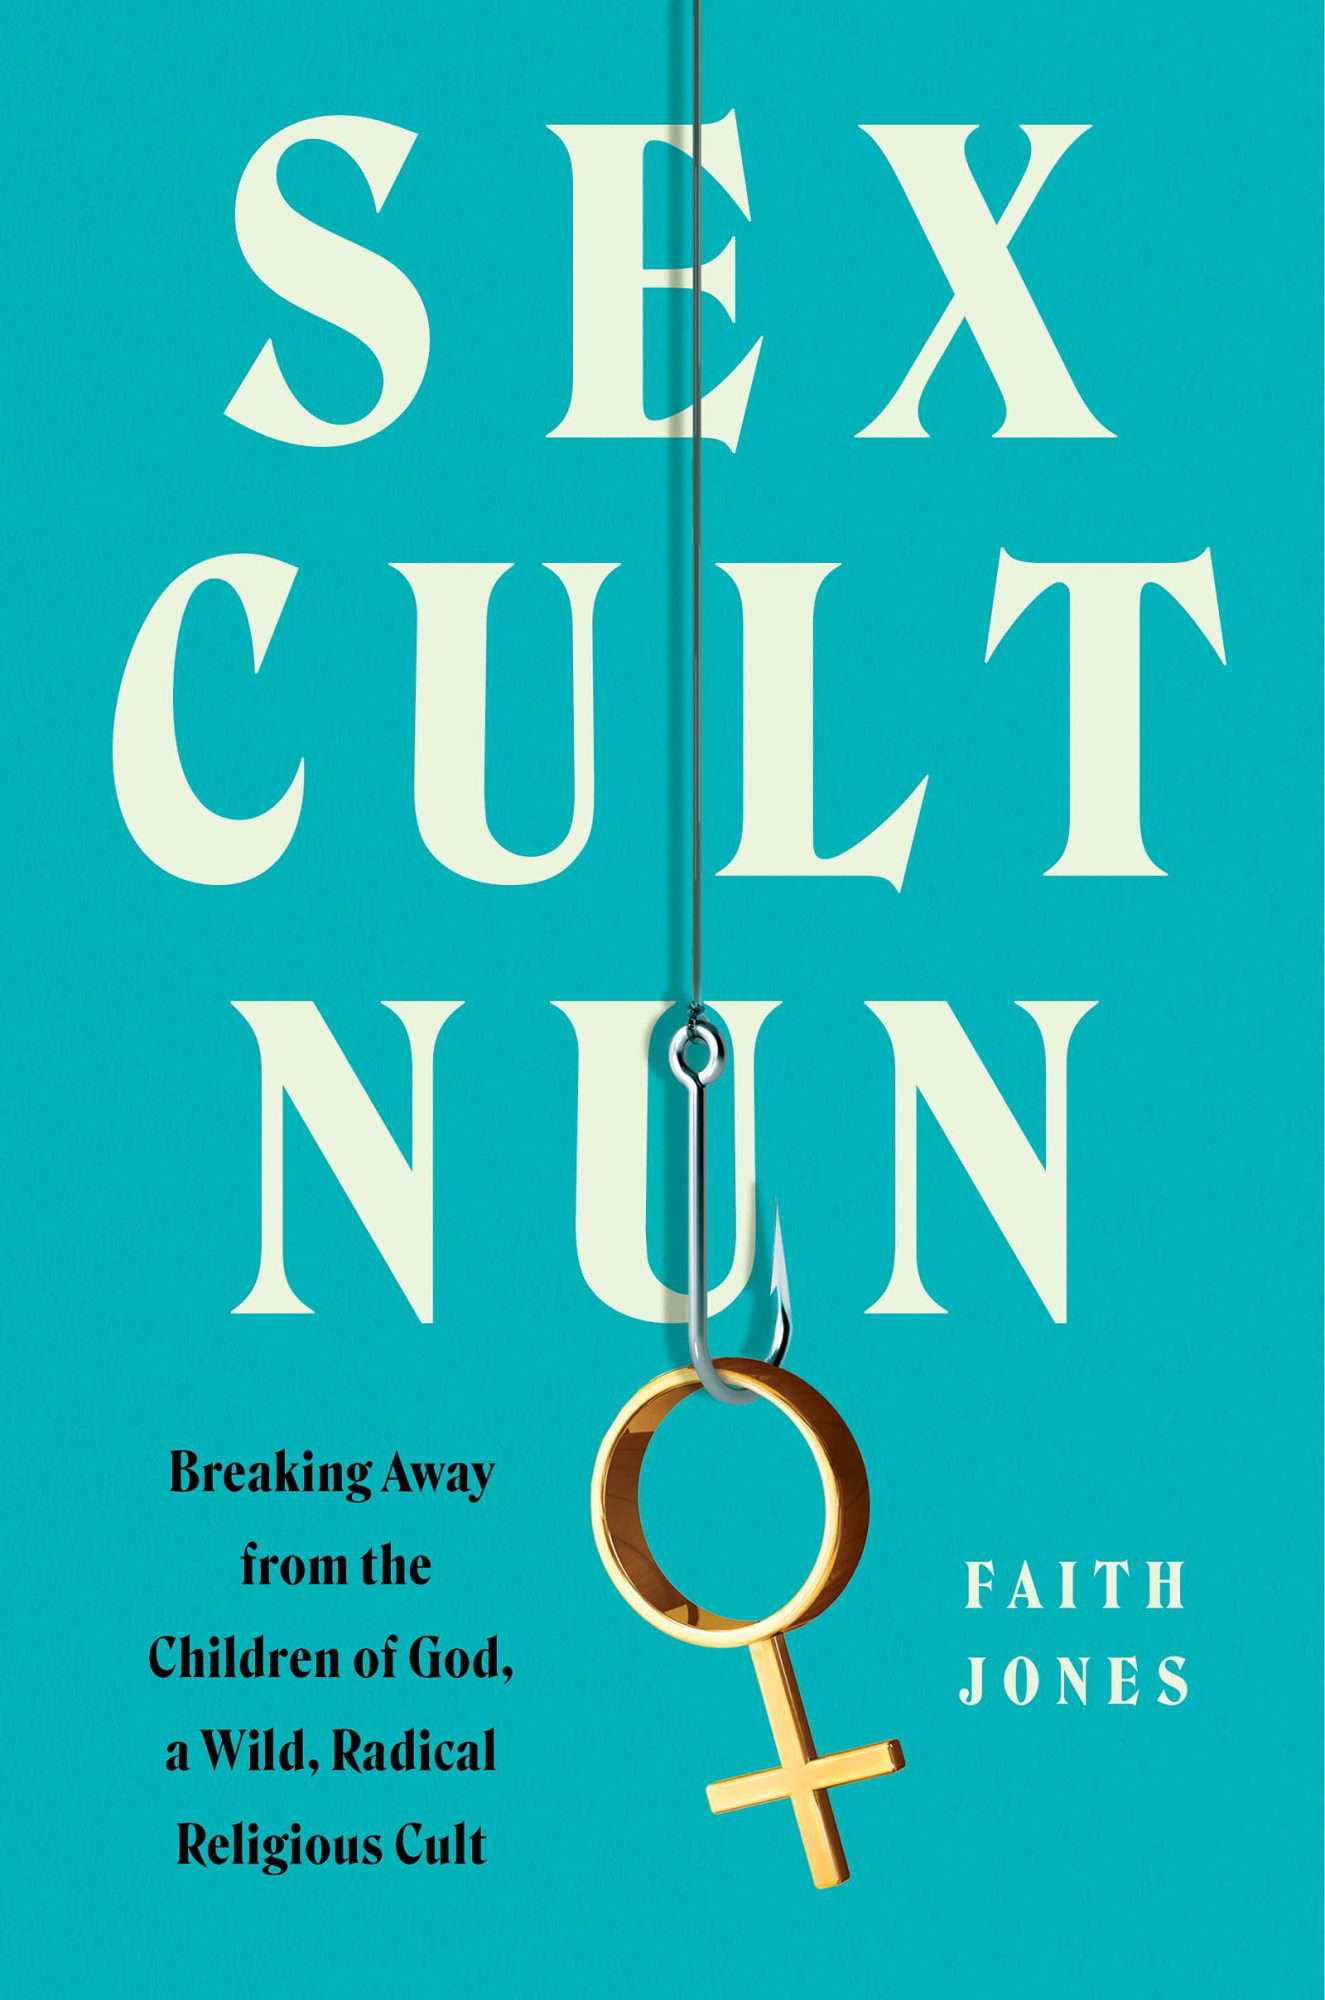 Book cover of Sex Cult Nun by Faith Jones